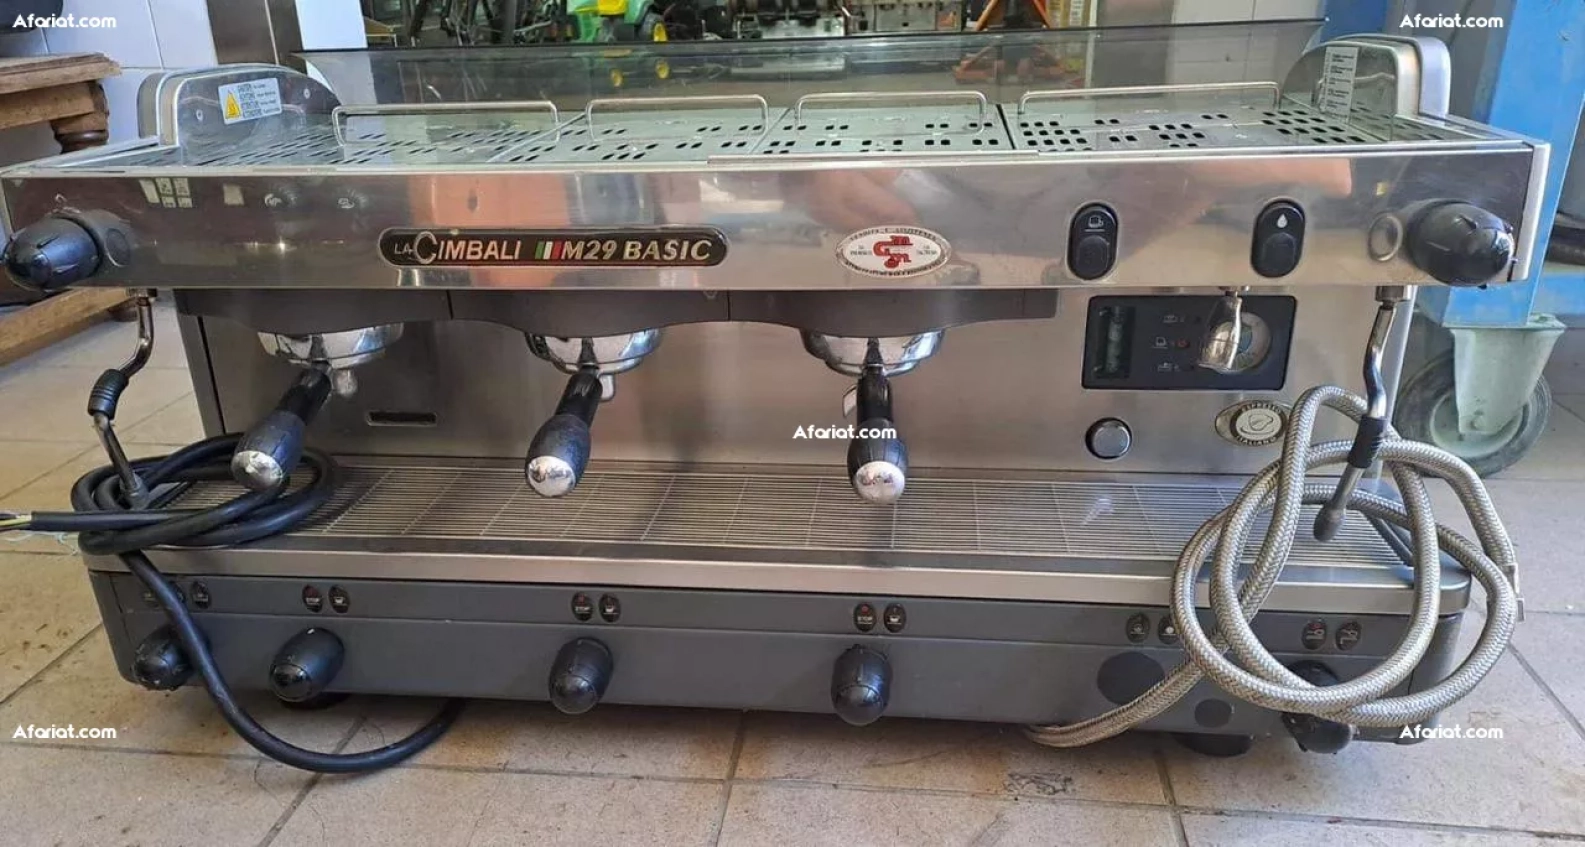 machine a cafe la cimbali